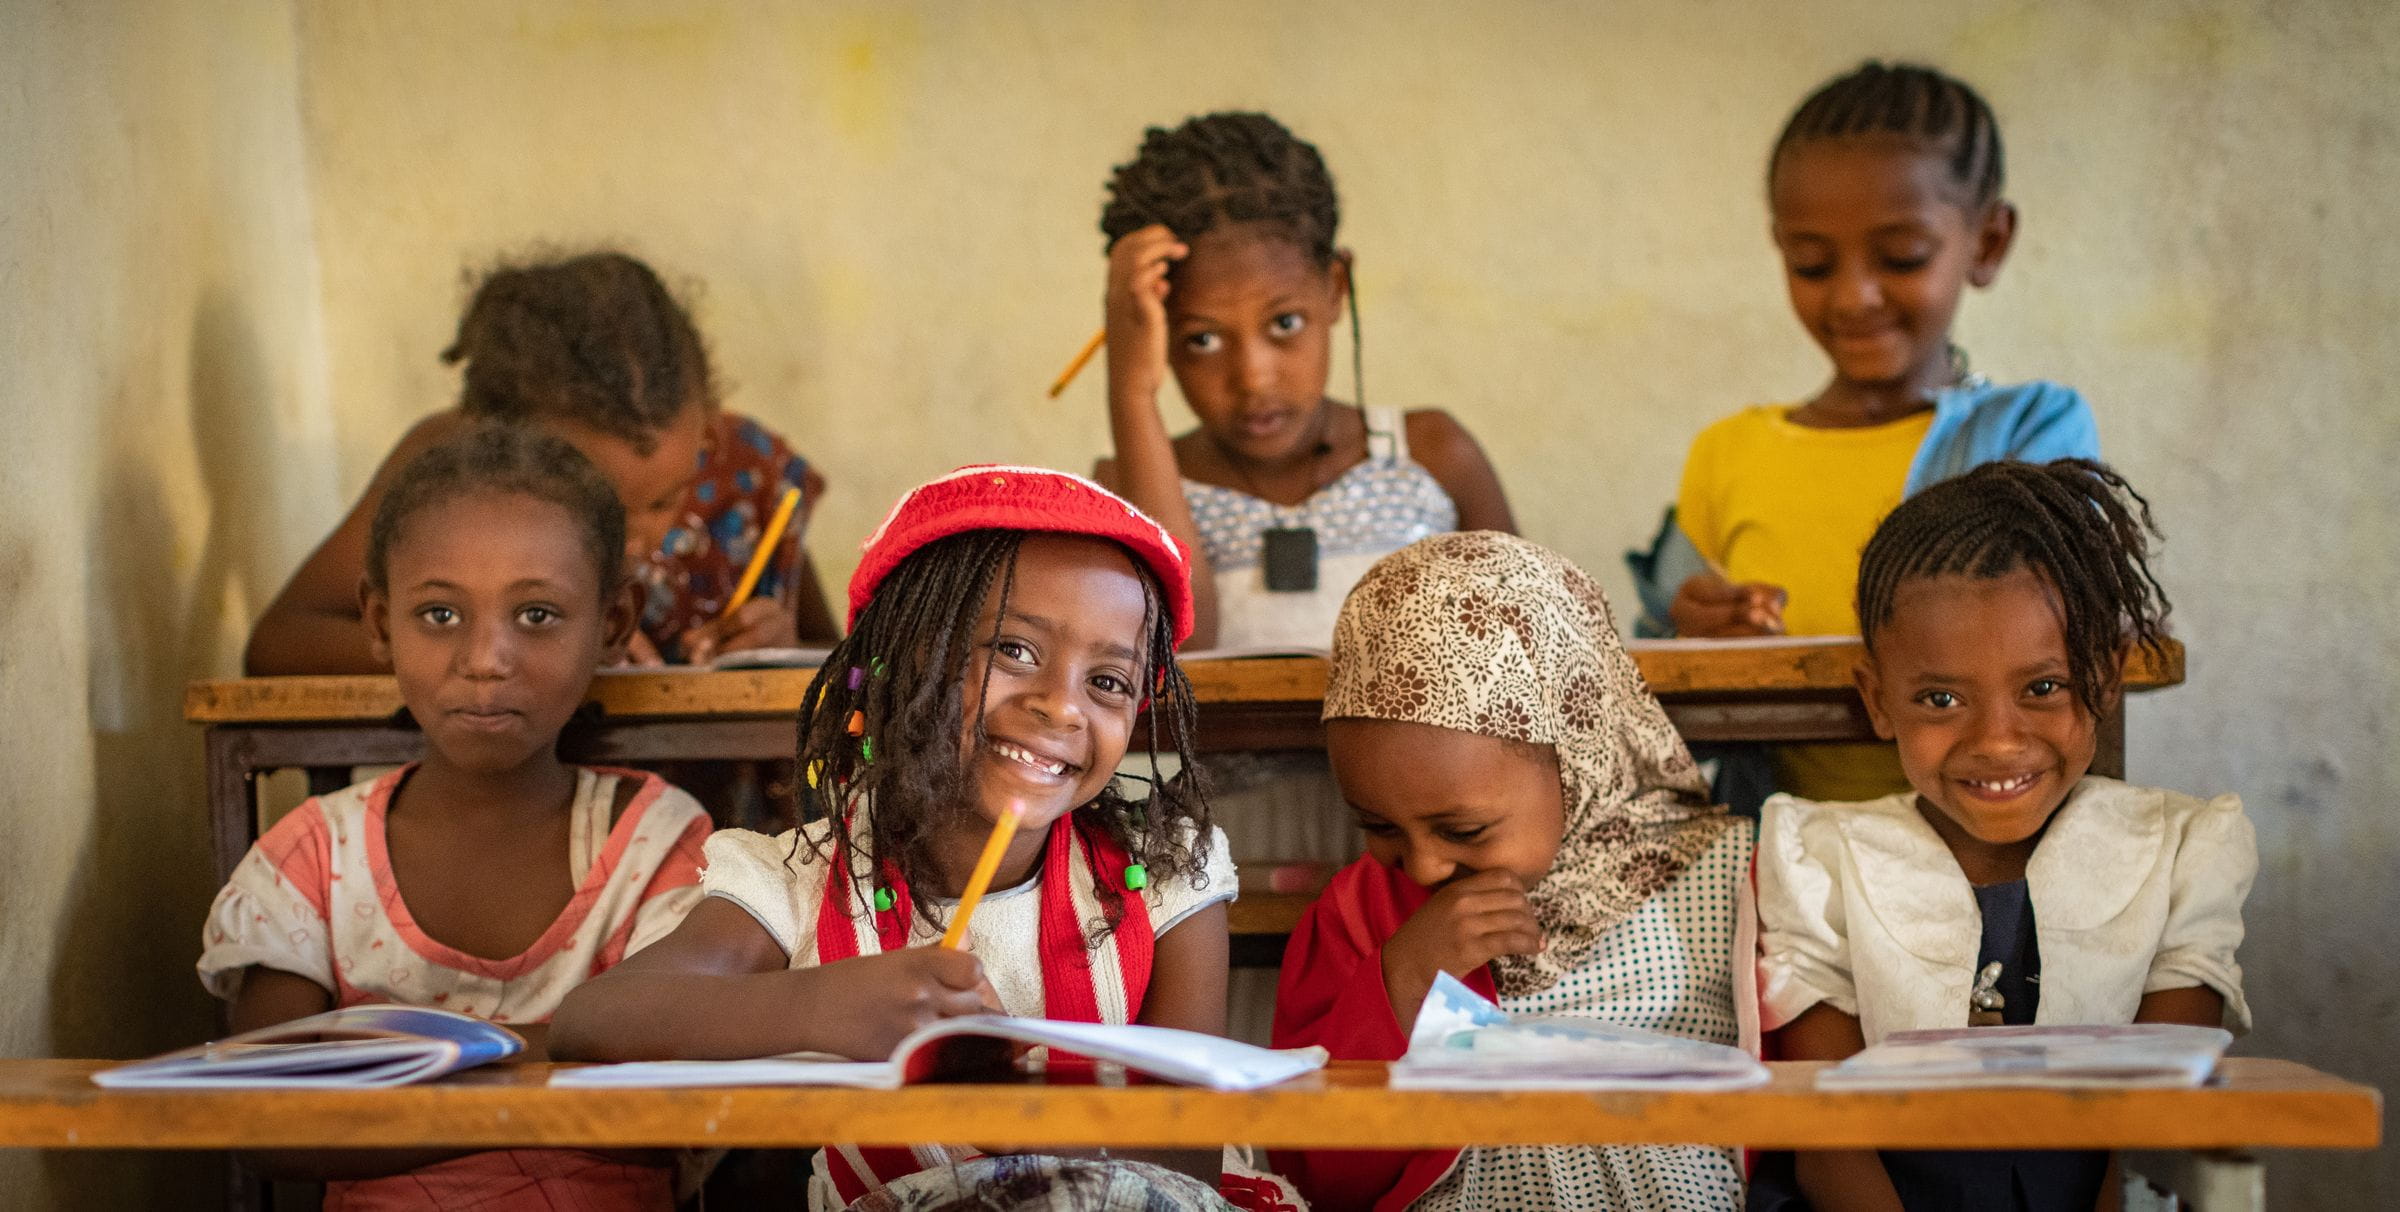 Kinder aus Äthiopien verfolgen aufmerksam den Unterricht. (Quelle Jakob Studnar)